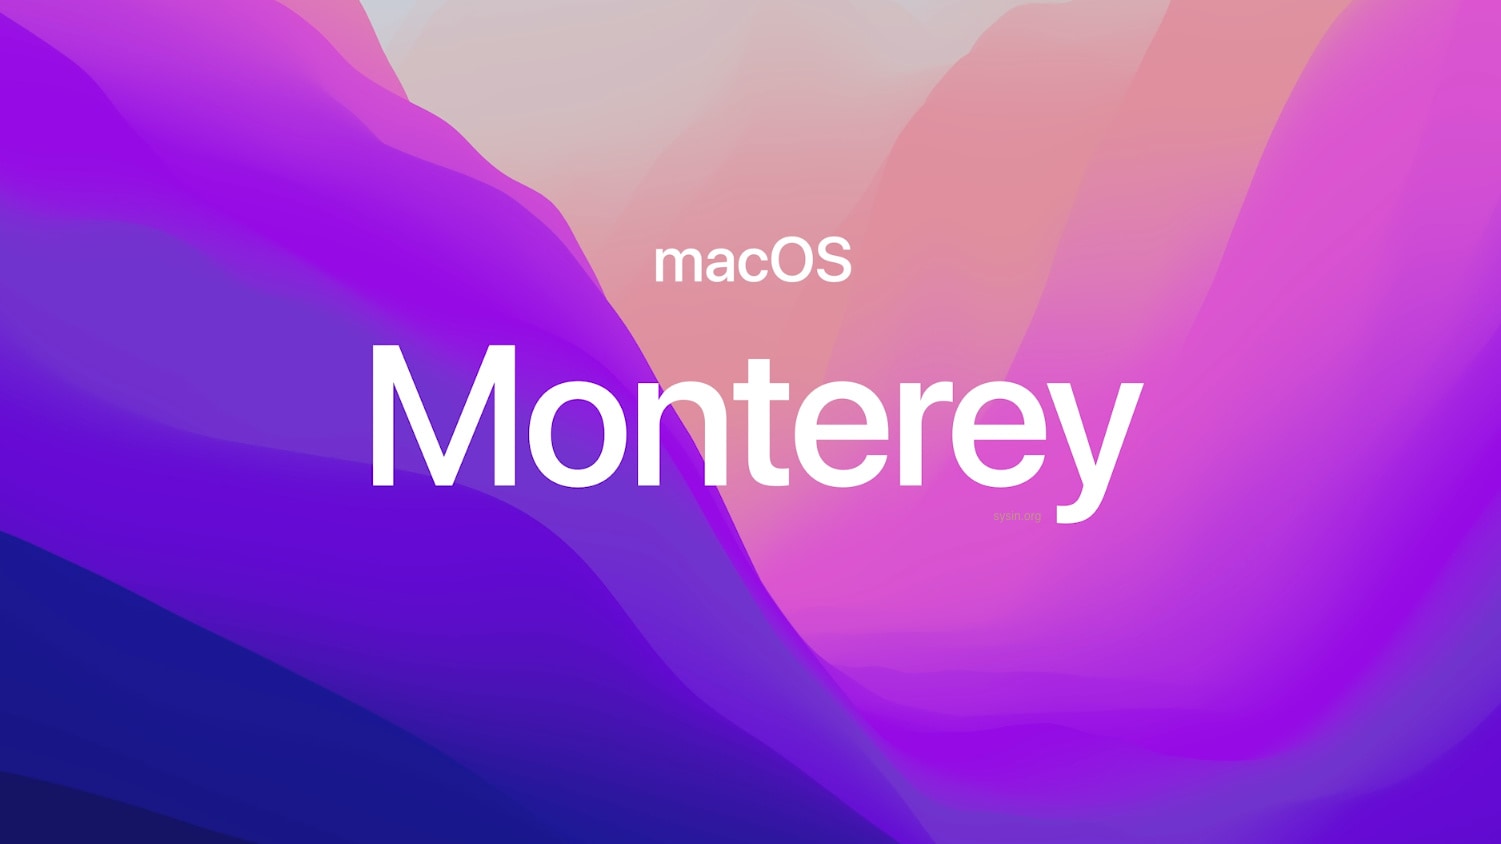 大特価 Mac mini Late 2012改 MacOS Monterey デスクトップ型PC